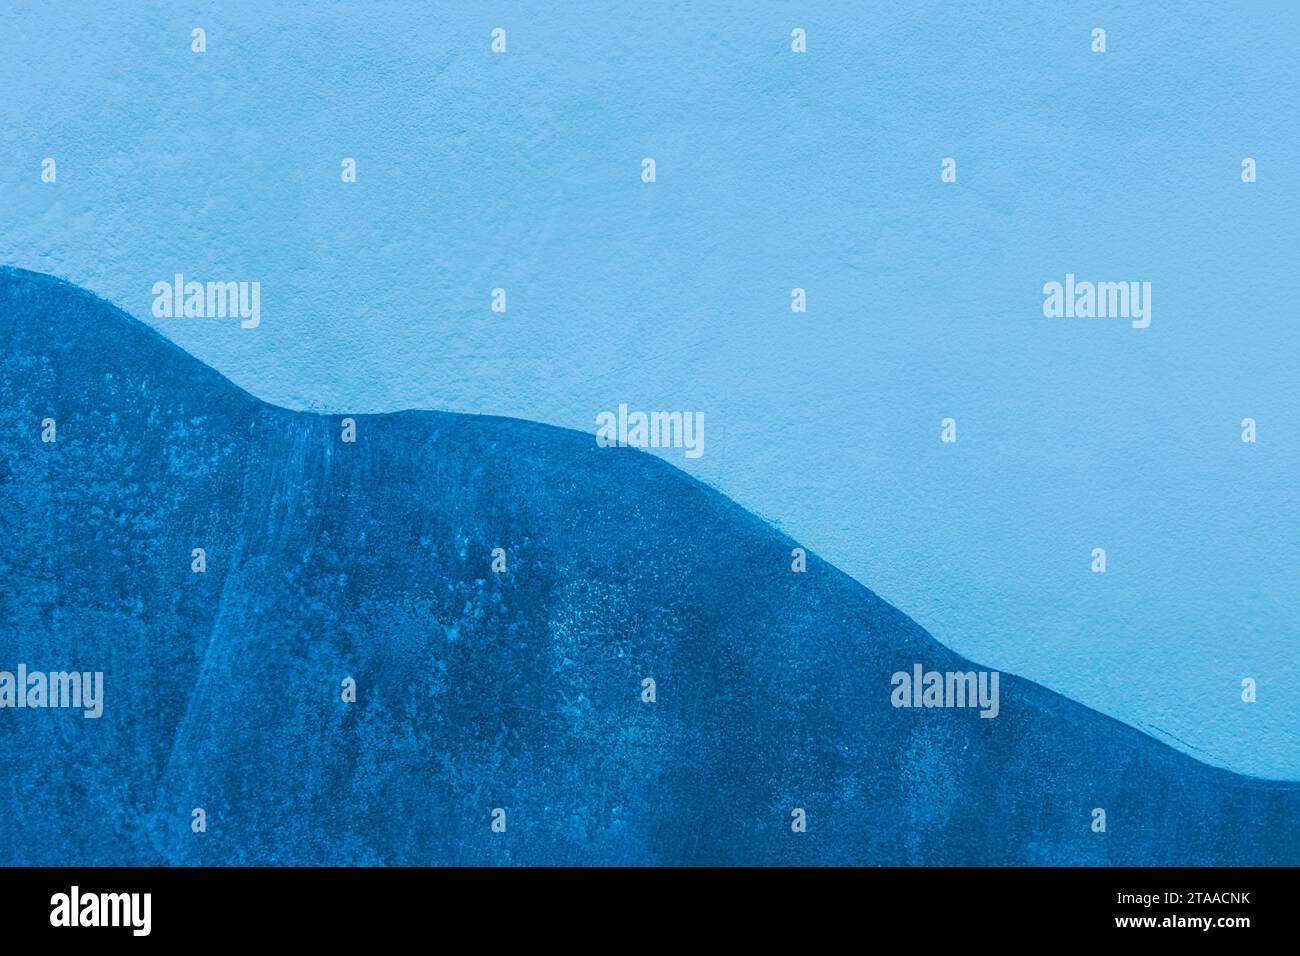 Teinte bleue froide vue abstraite 2 conception murale à deux couleurs Rock Mountain arrière-plan. Banque D'Images